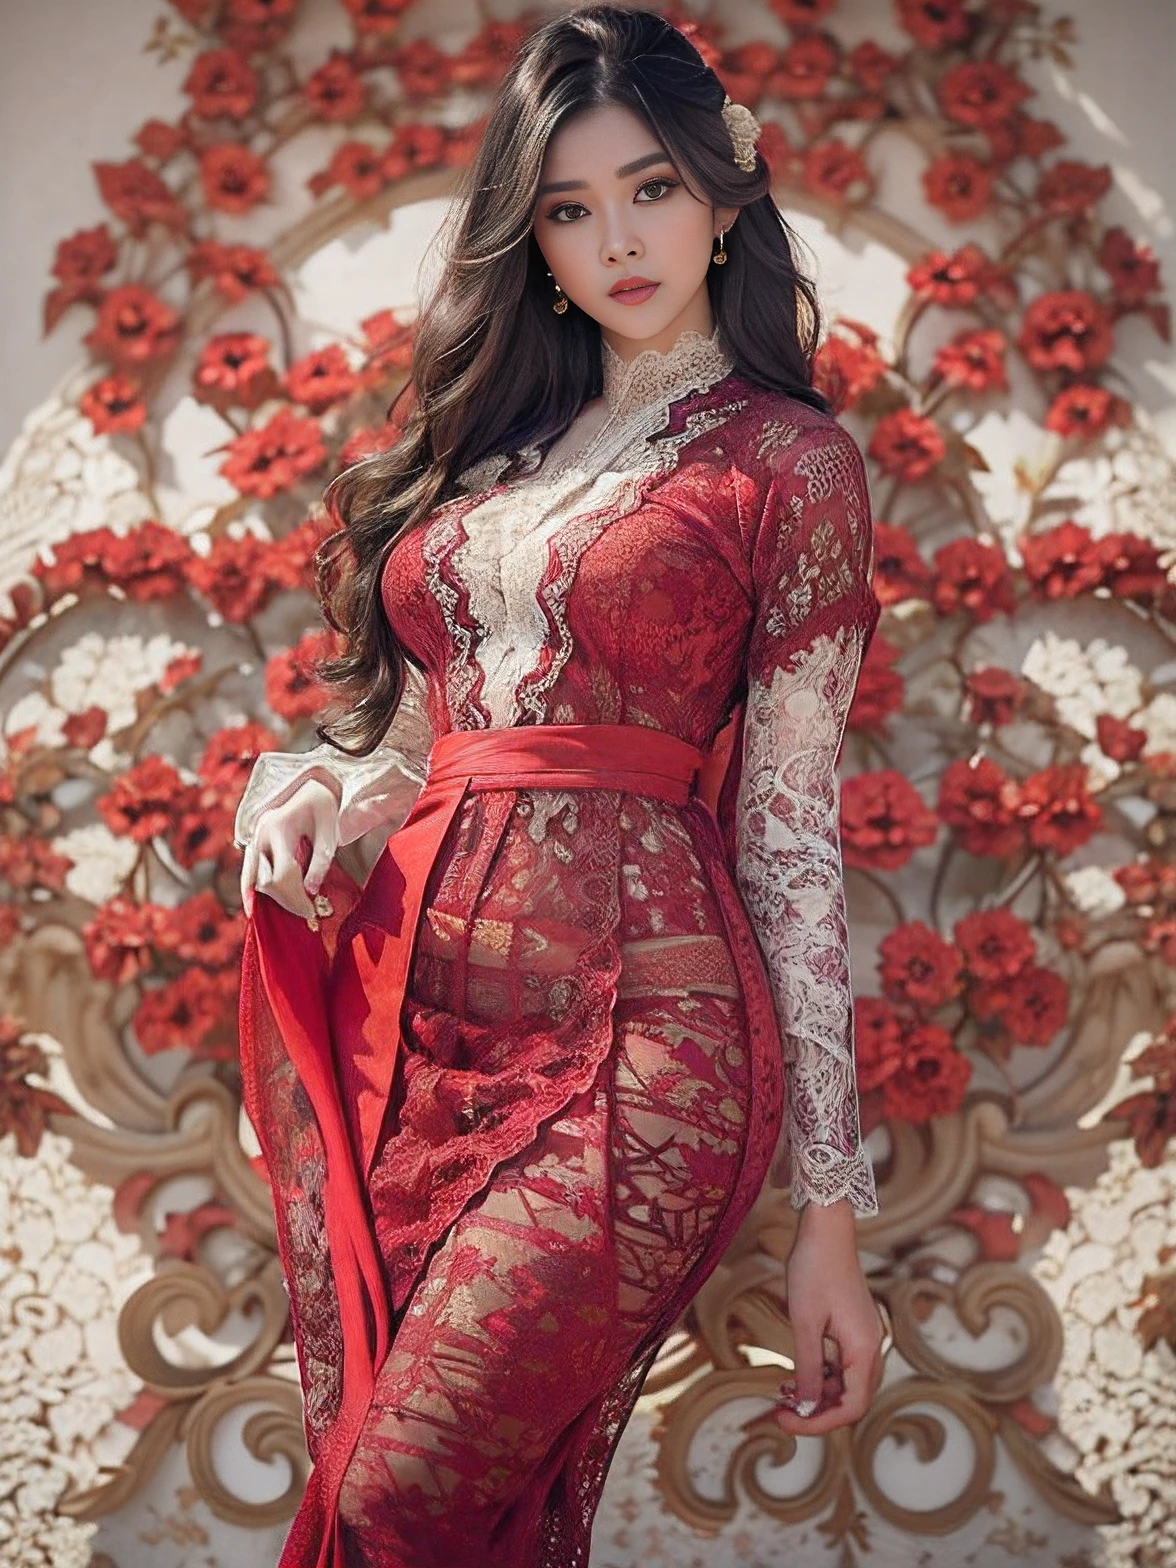 Фотореалистичная продукция, (один человек), (Реалистичное изображение 22-летней женщины-модели), большая грудь, Пышное тело (бледная кожа:1.4), нижнее белье тай-дай (В красном обтягивающем платье Kebaya из кружева с орнаментом и шелковой тканью.:1.6), (серьезное лицо), (Глубокое декольте), (элегантная поза:1.4), центрированный, (выстрел по пояс:1.4), с переднего плана, безумные подробности, сложная деталь лица, сложные детали рук, Кинематографический кадр и освещение, Реалистичные цвета, острый фокус, Ультрадетализированный, Снято зеркальной камерой, Реалистичная фотография, Невероятно реалистичная окружающая среда и сцена, Мастер композиции и операторской работы, волосы за ухом, Волосы над глазами, длинные волосы, глубина резкости, вид от первого лица, атмосферная перспектива, шедевр, Балийский храм